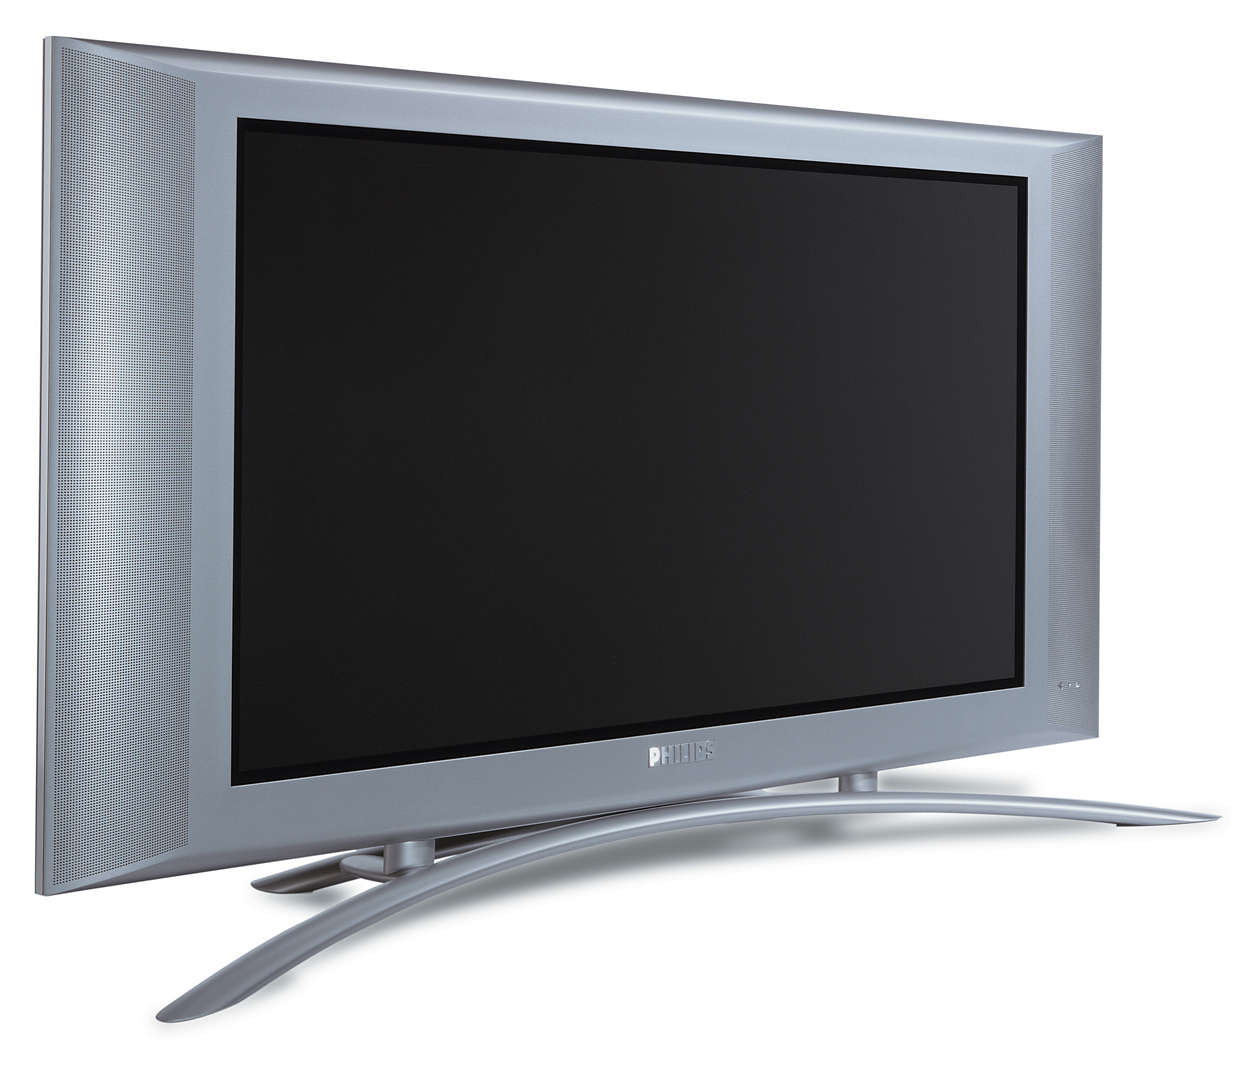 Первый плоский телевизор. Телевизор Philips 37fd9944/01s. Philips 32fd9944/01s. Телевизор Филипс 42fd9944/01s. Плазменная панель Philips 37fd9944/01s.